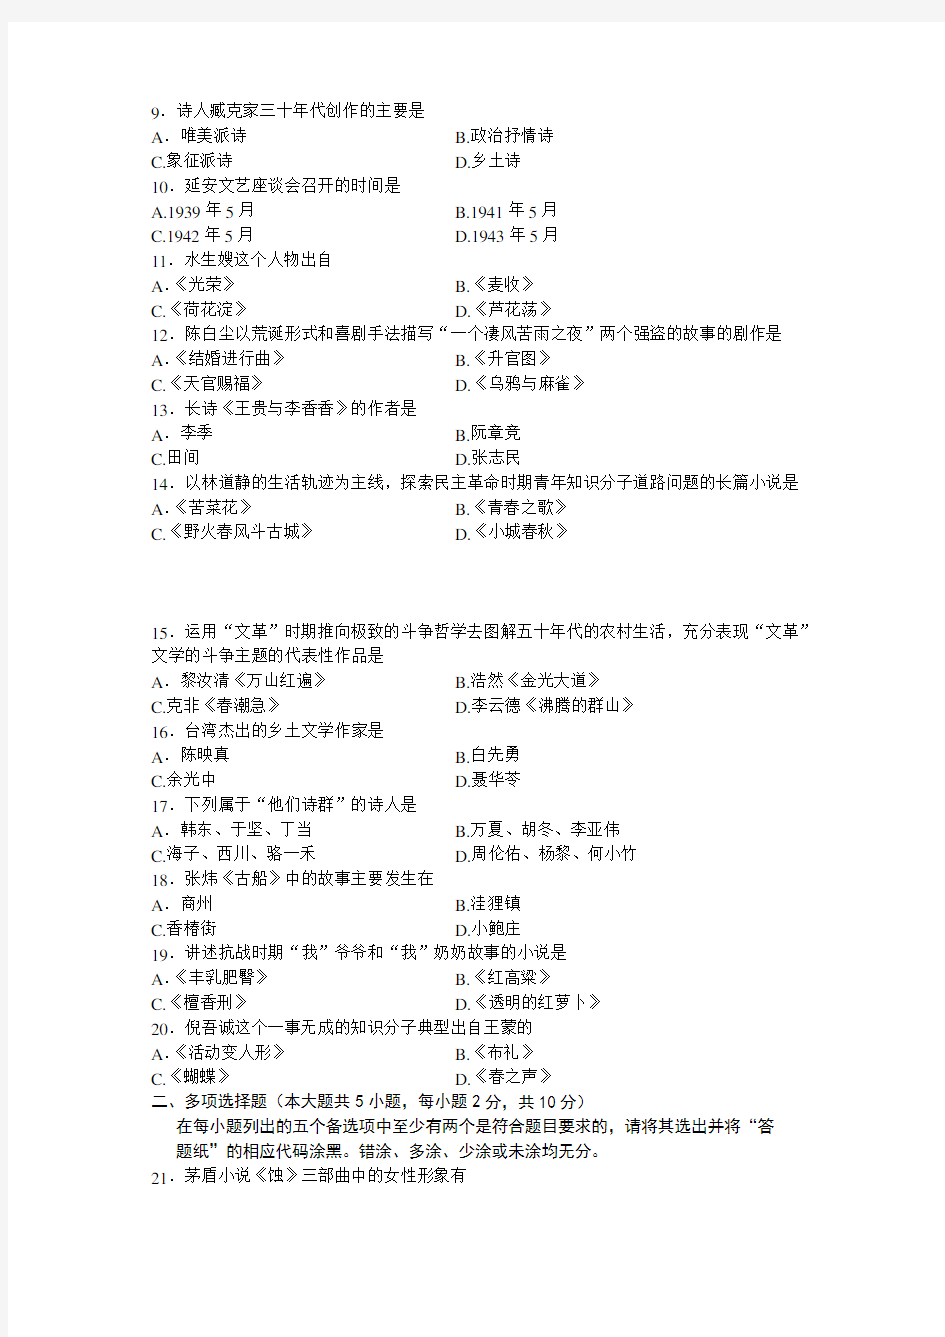 2013年4月00537中国现代文学史真题及答案